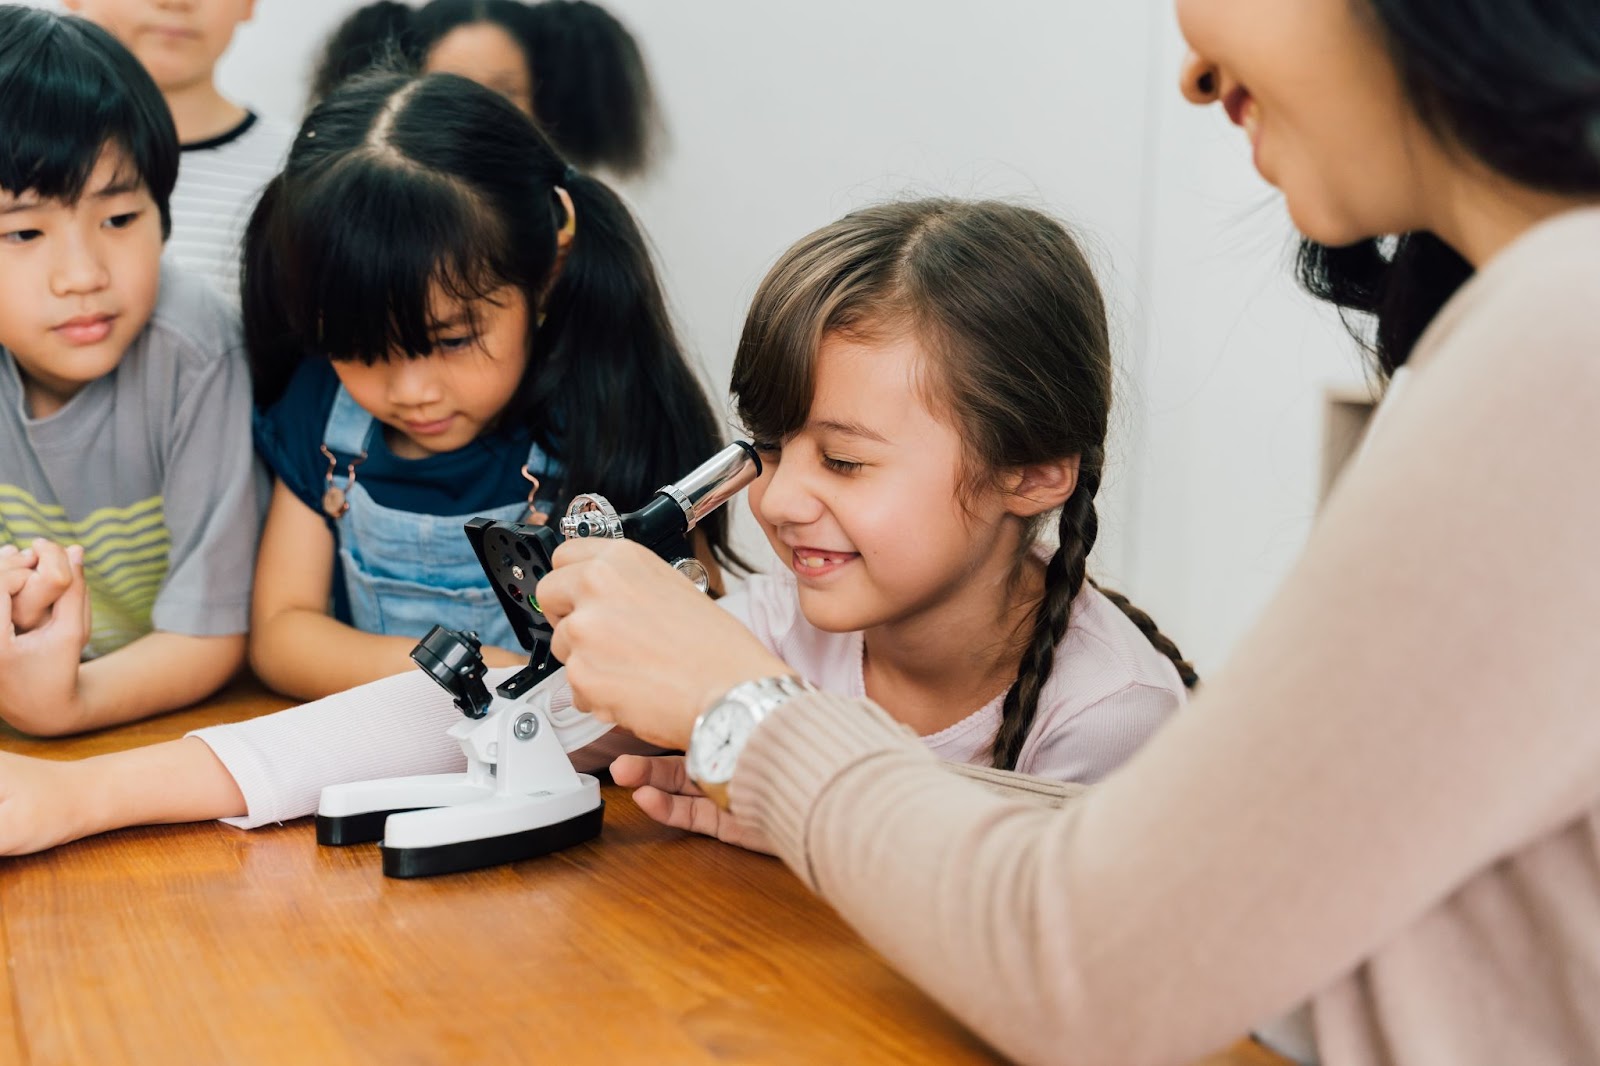 Menina olhando por um microscópio com auxílio da professora e colegas em sua volta, exemplificando uma equipe interdisciplinar